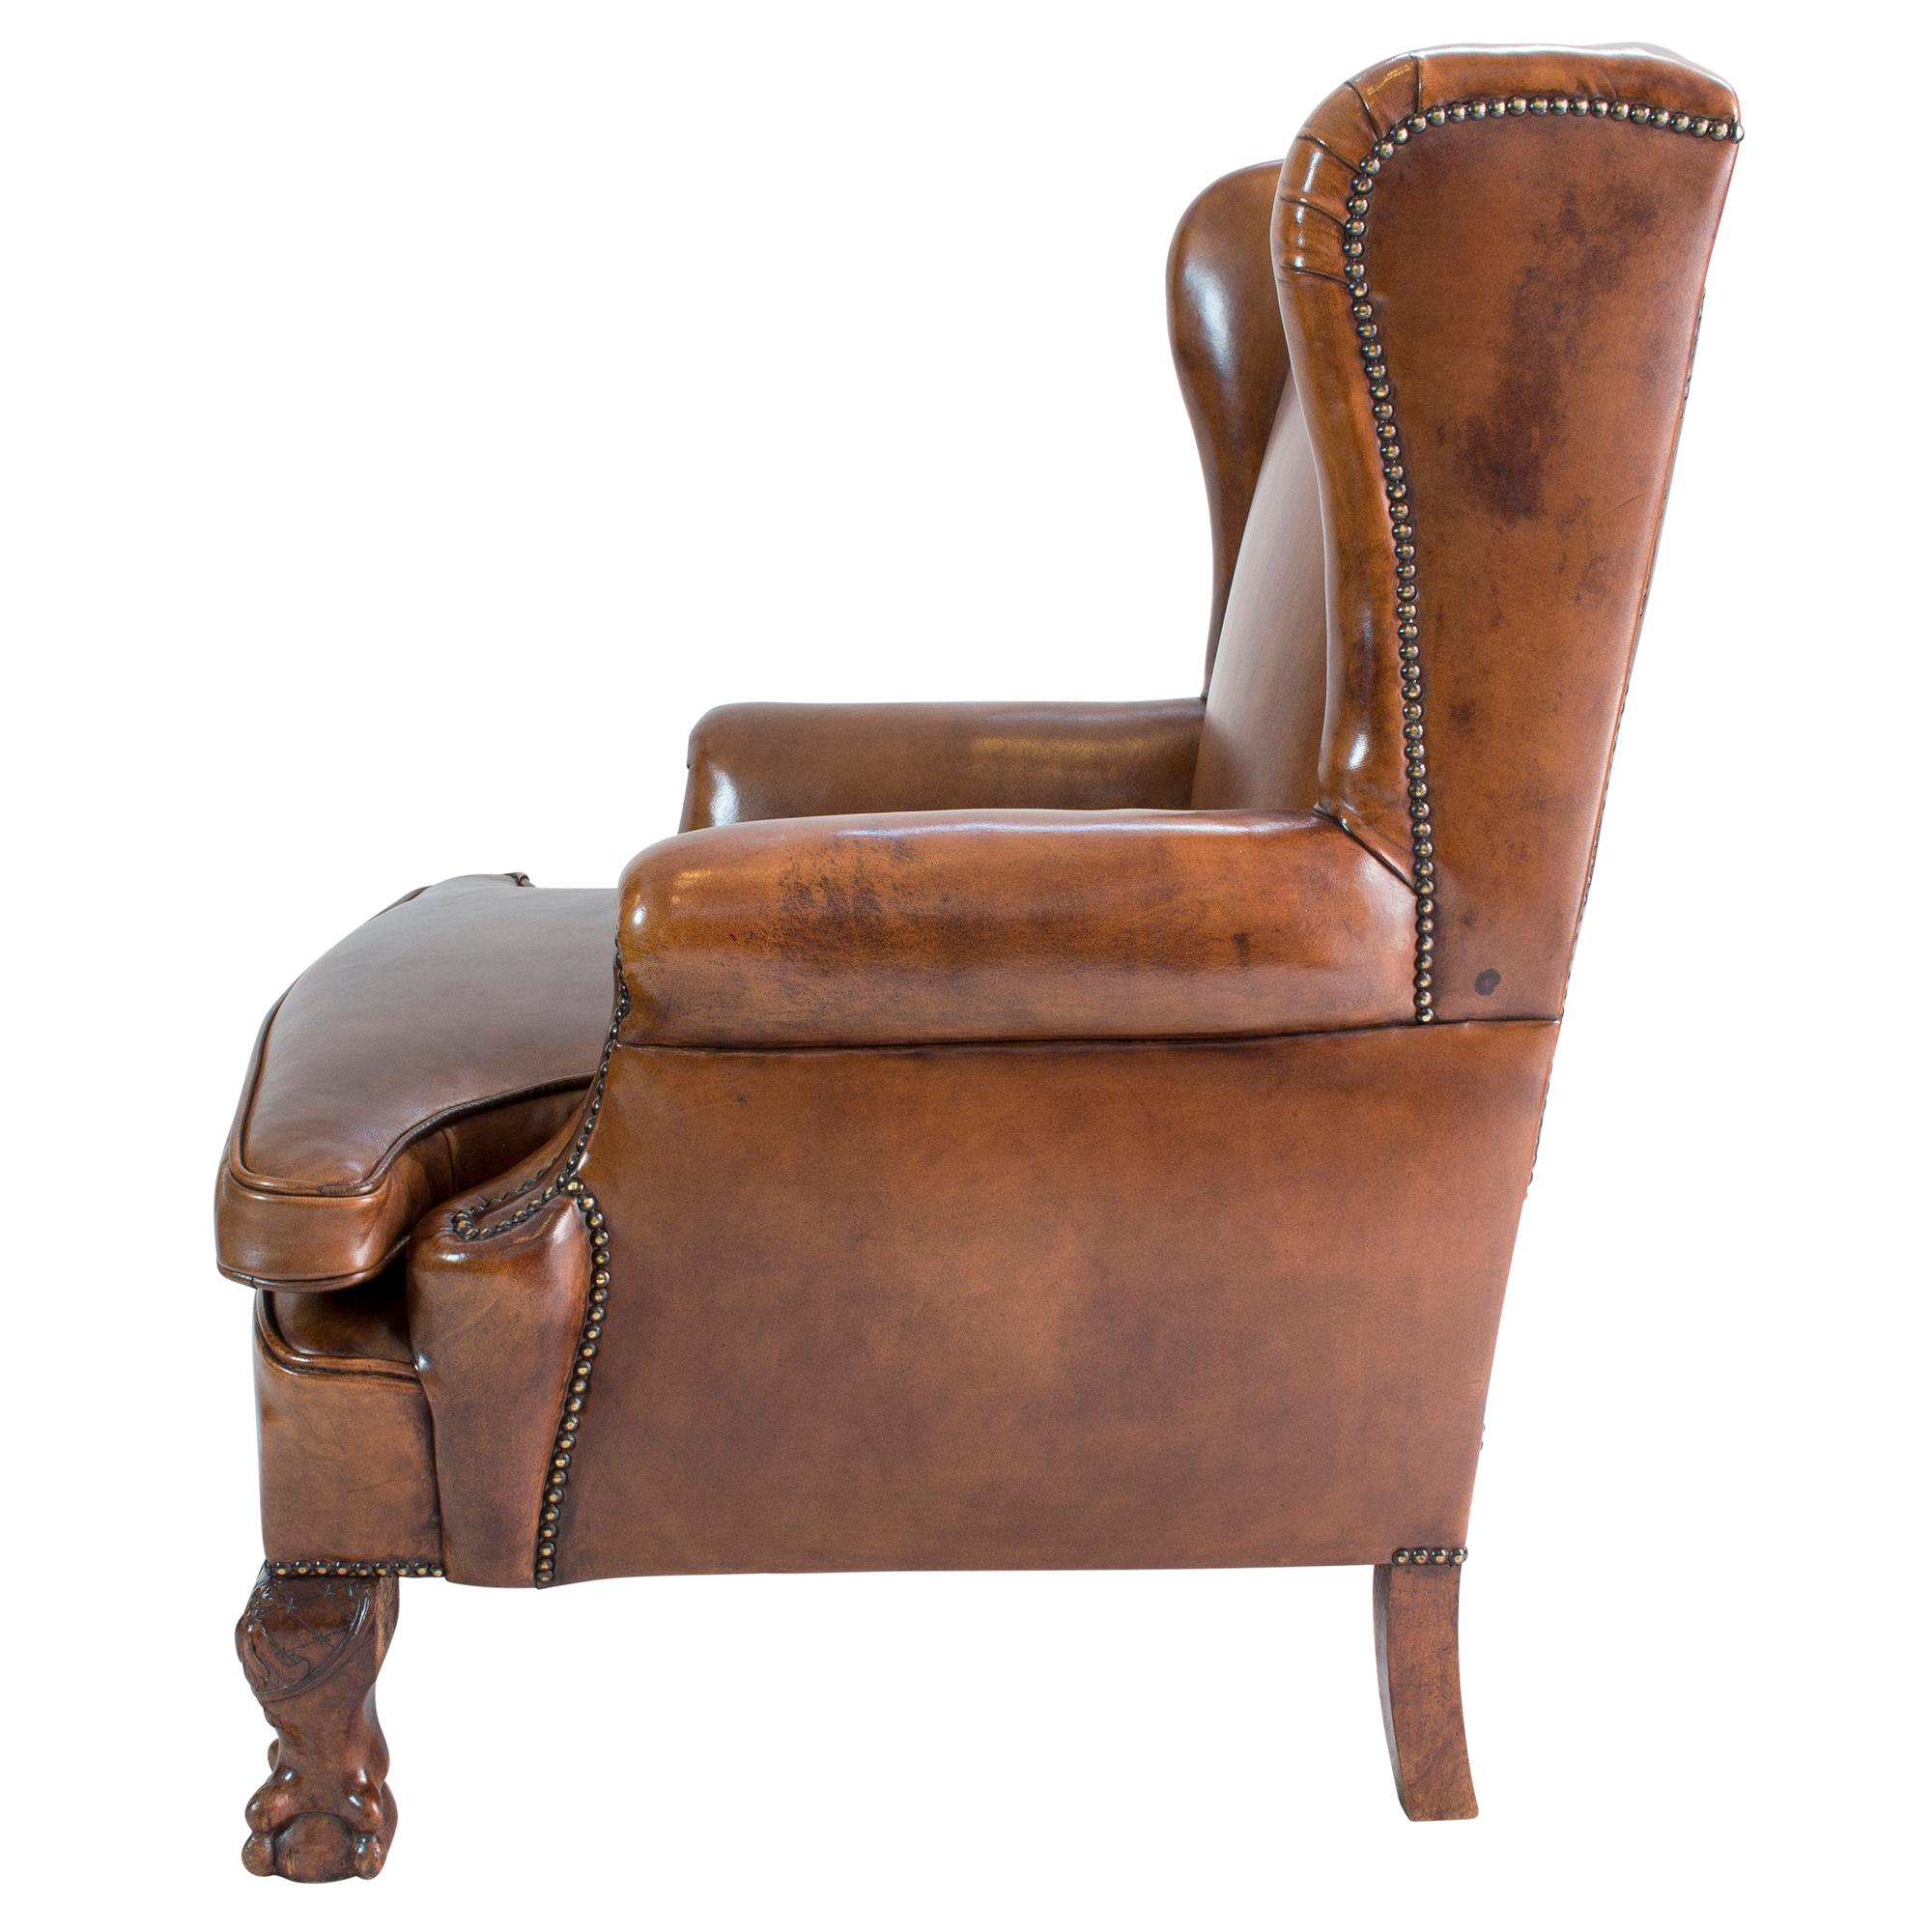 Ce fauteuil à oreilles Art déco, dont la structure originale est en bois de hêtre, a été récemment recouvert de cuir de mouton patiné à la main.
Très confortable et extrêmement robuste.

Mesures : Hauteur d'assise 45 cm.